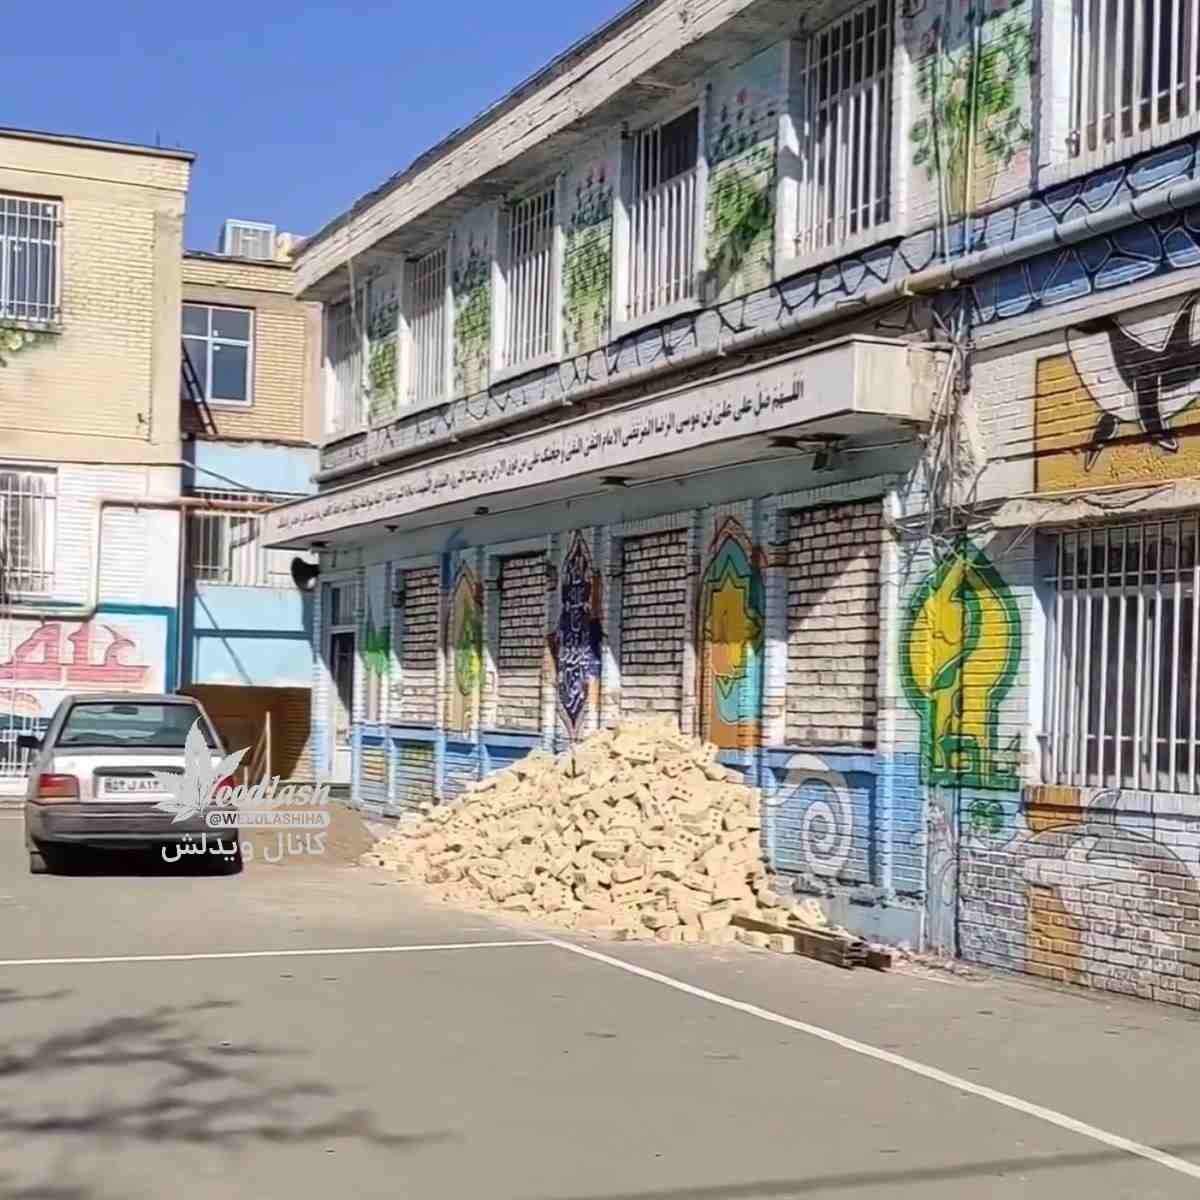 حرکت عجیب آموزش و پرورش مشهد با ساخت مغازه در «فضای بلااستفاده» بعضی مدارس